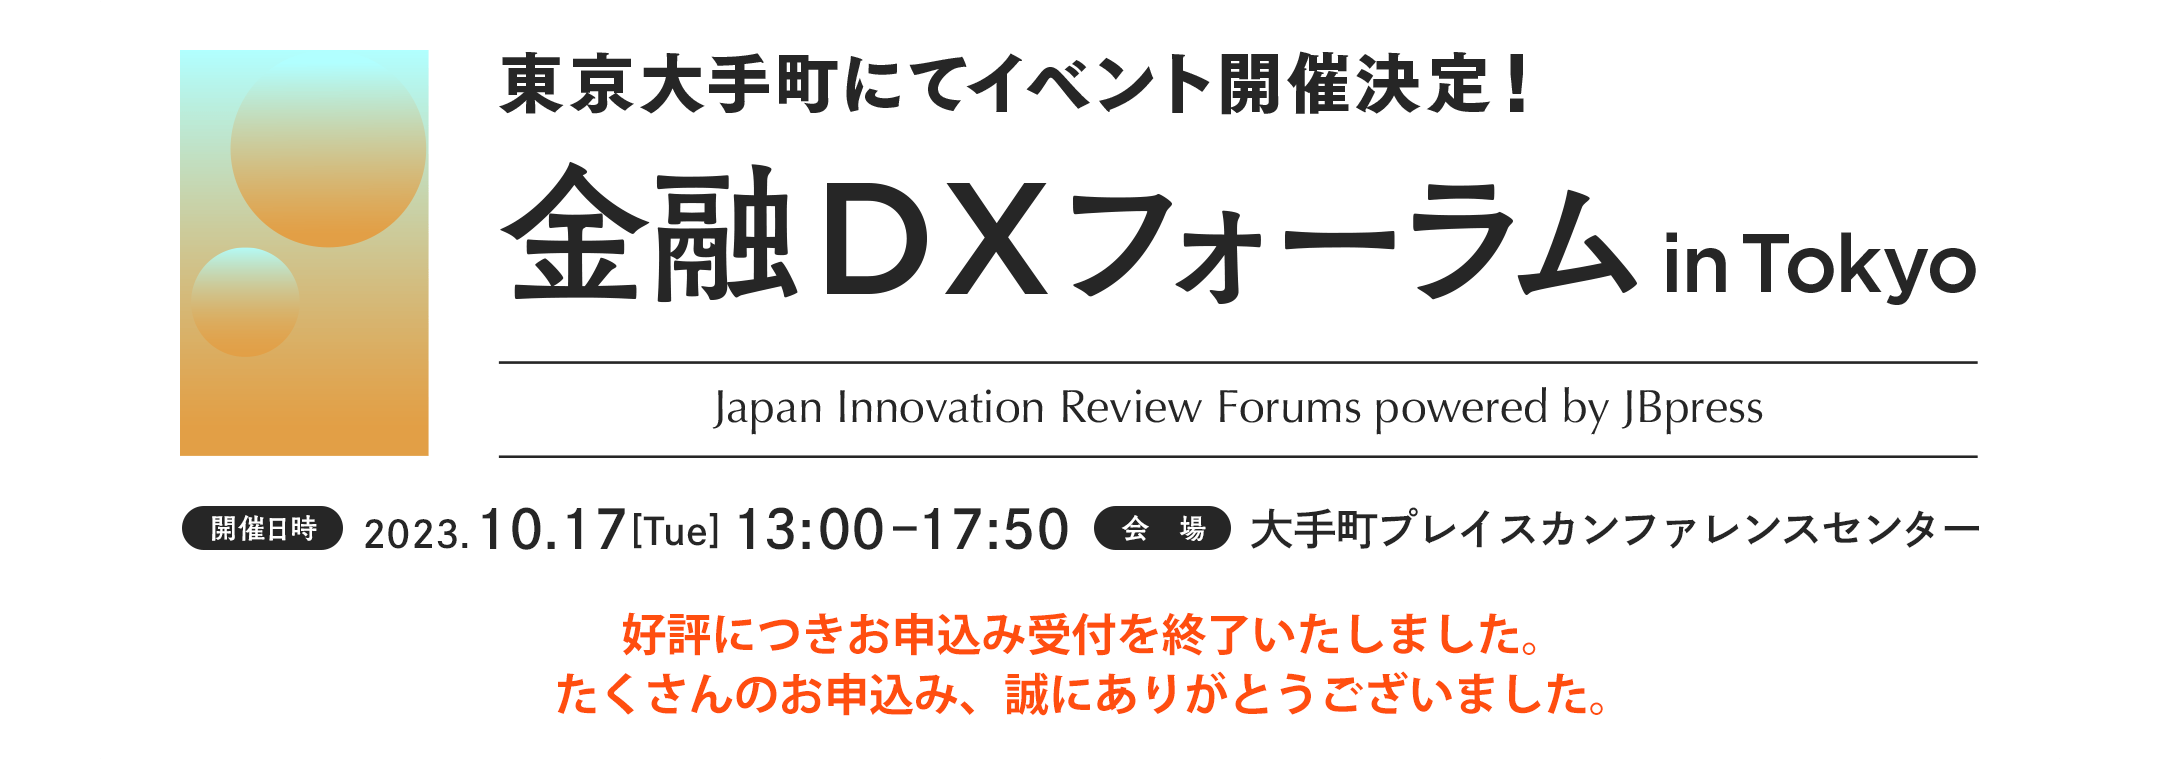 金融DXフォーラム in Tokyo